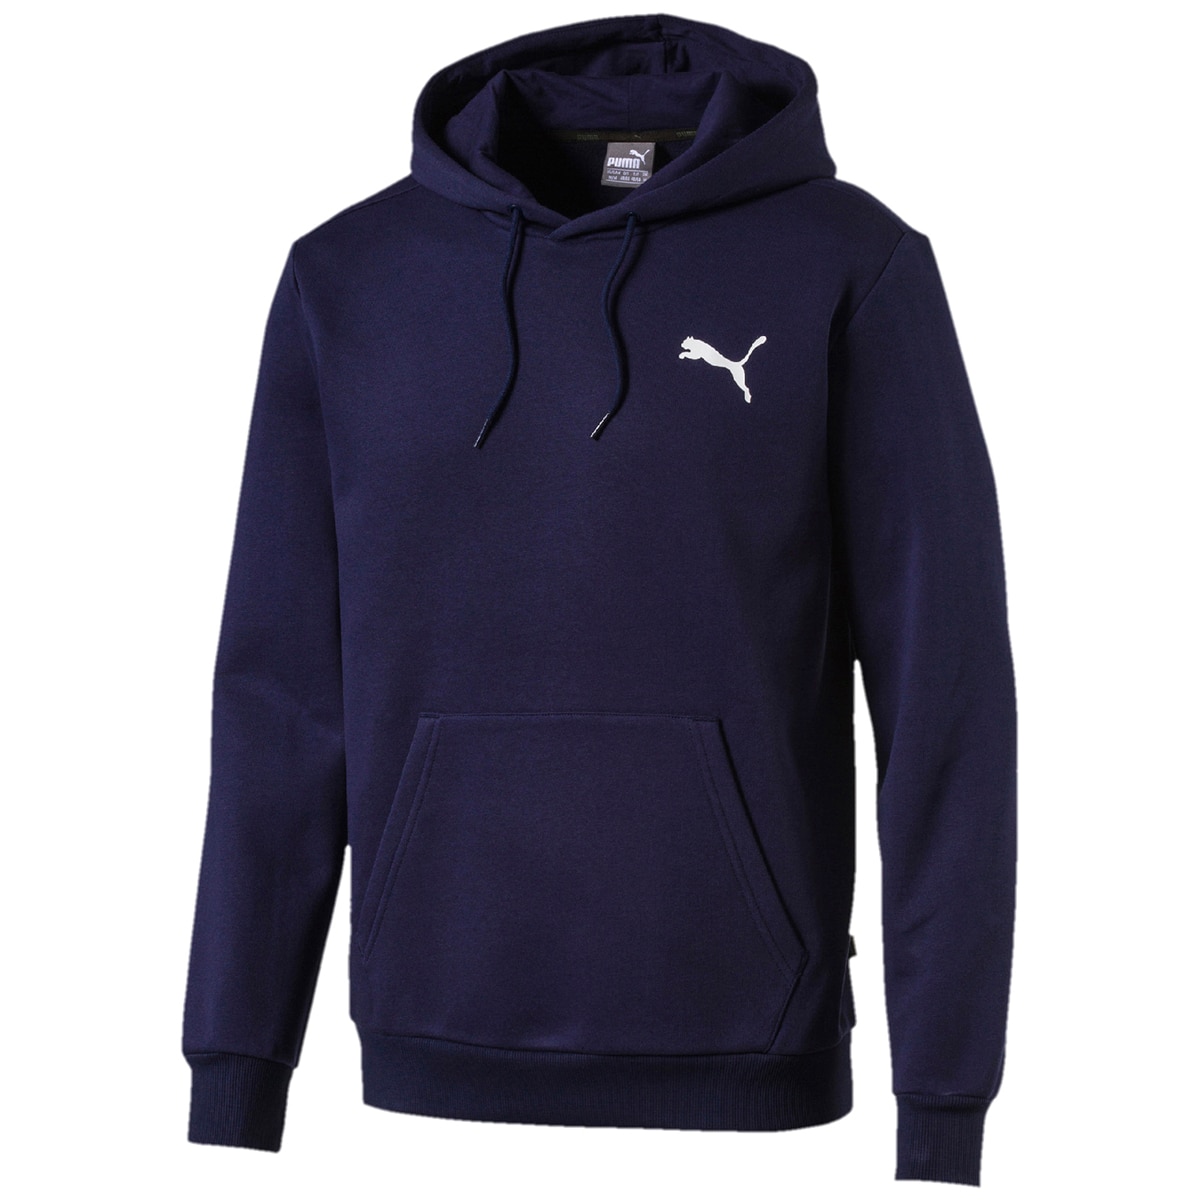 Puma Men's fleece hoodie - Peacoat